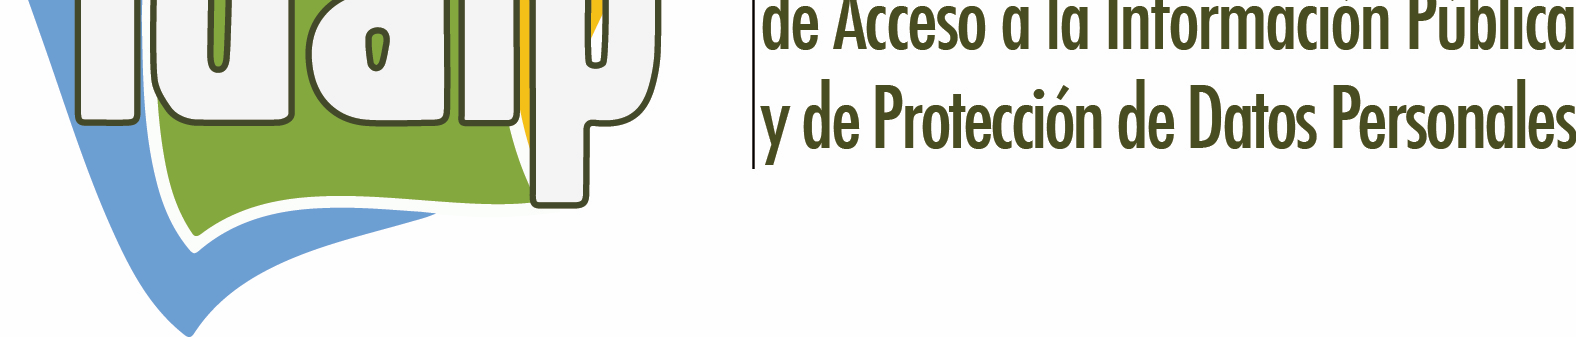 El Consejo General del Instituto Duranguense de Acceso a la Información Pública y de Protección de Datos Personales, en ejercicio de la facultad que le confiere el Artículo 67, fracción XVII de la